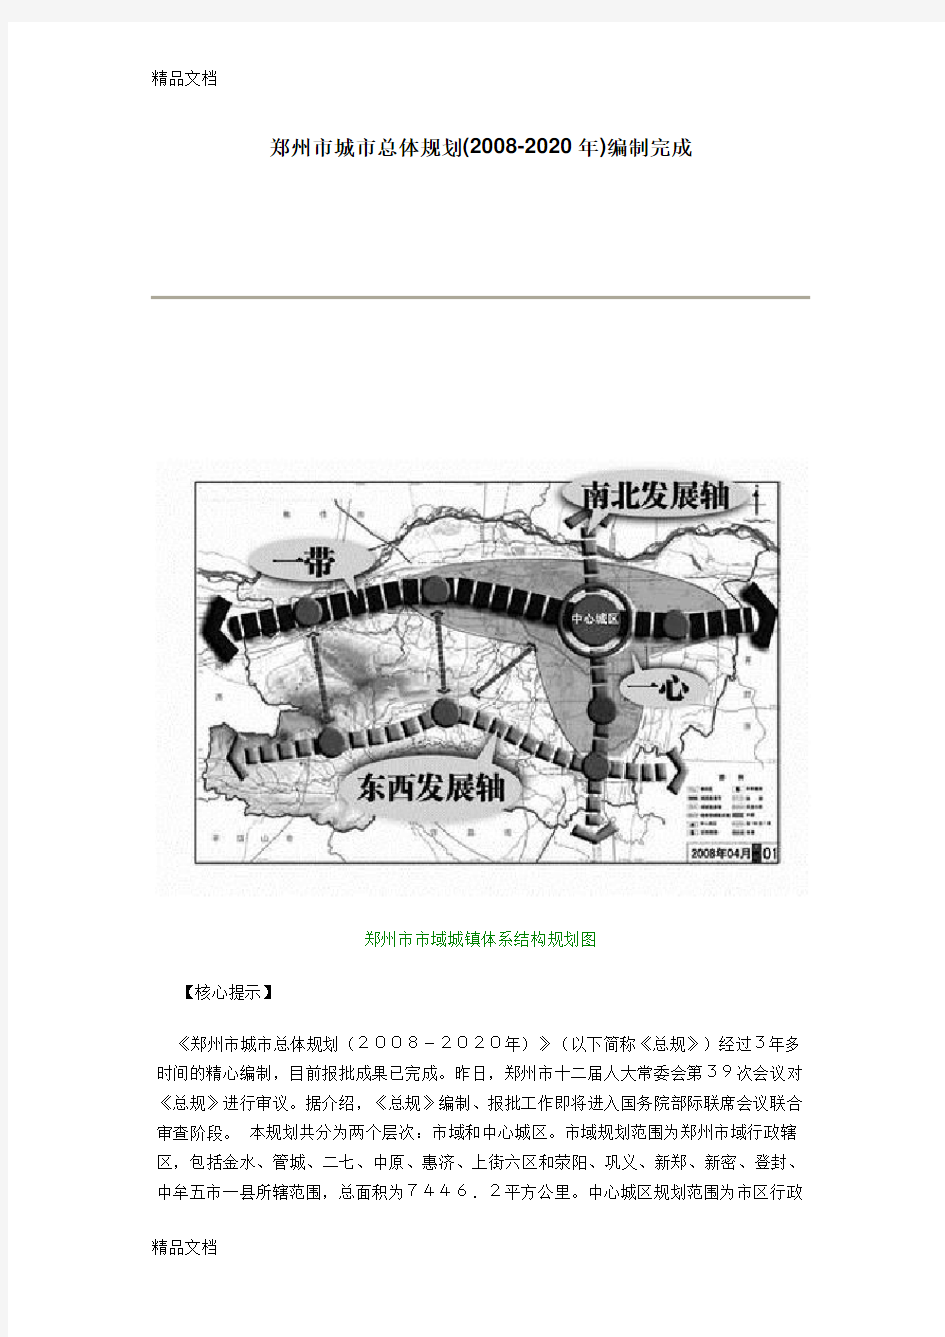 (整理)郑州市城市总体规划